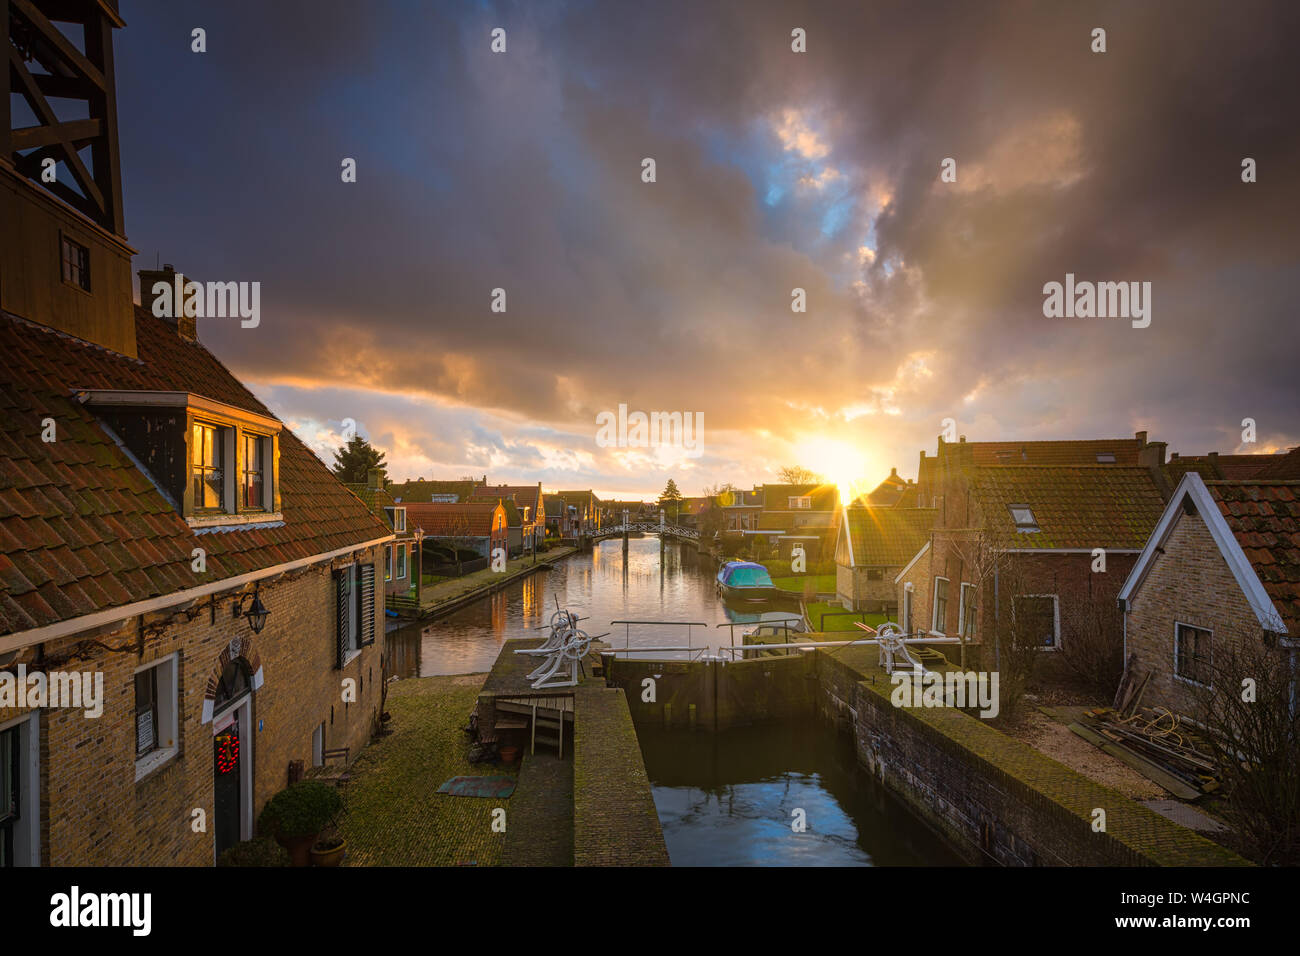 Une ville historique et populaire destination touristique dans les Pays-Bas à l'IJsselmeer avec de vieilles maisons et canaux - Hindeloopen, Pays-Bas Banque D'Images